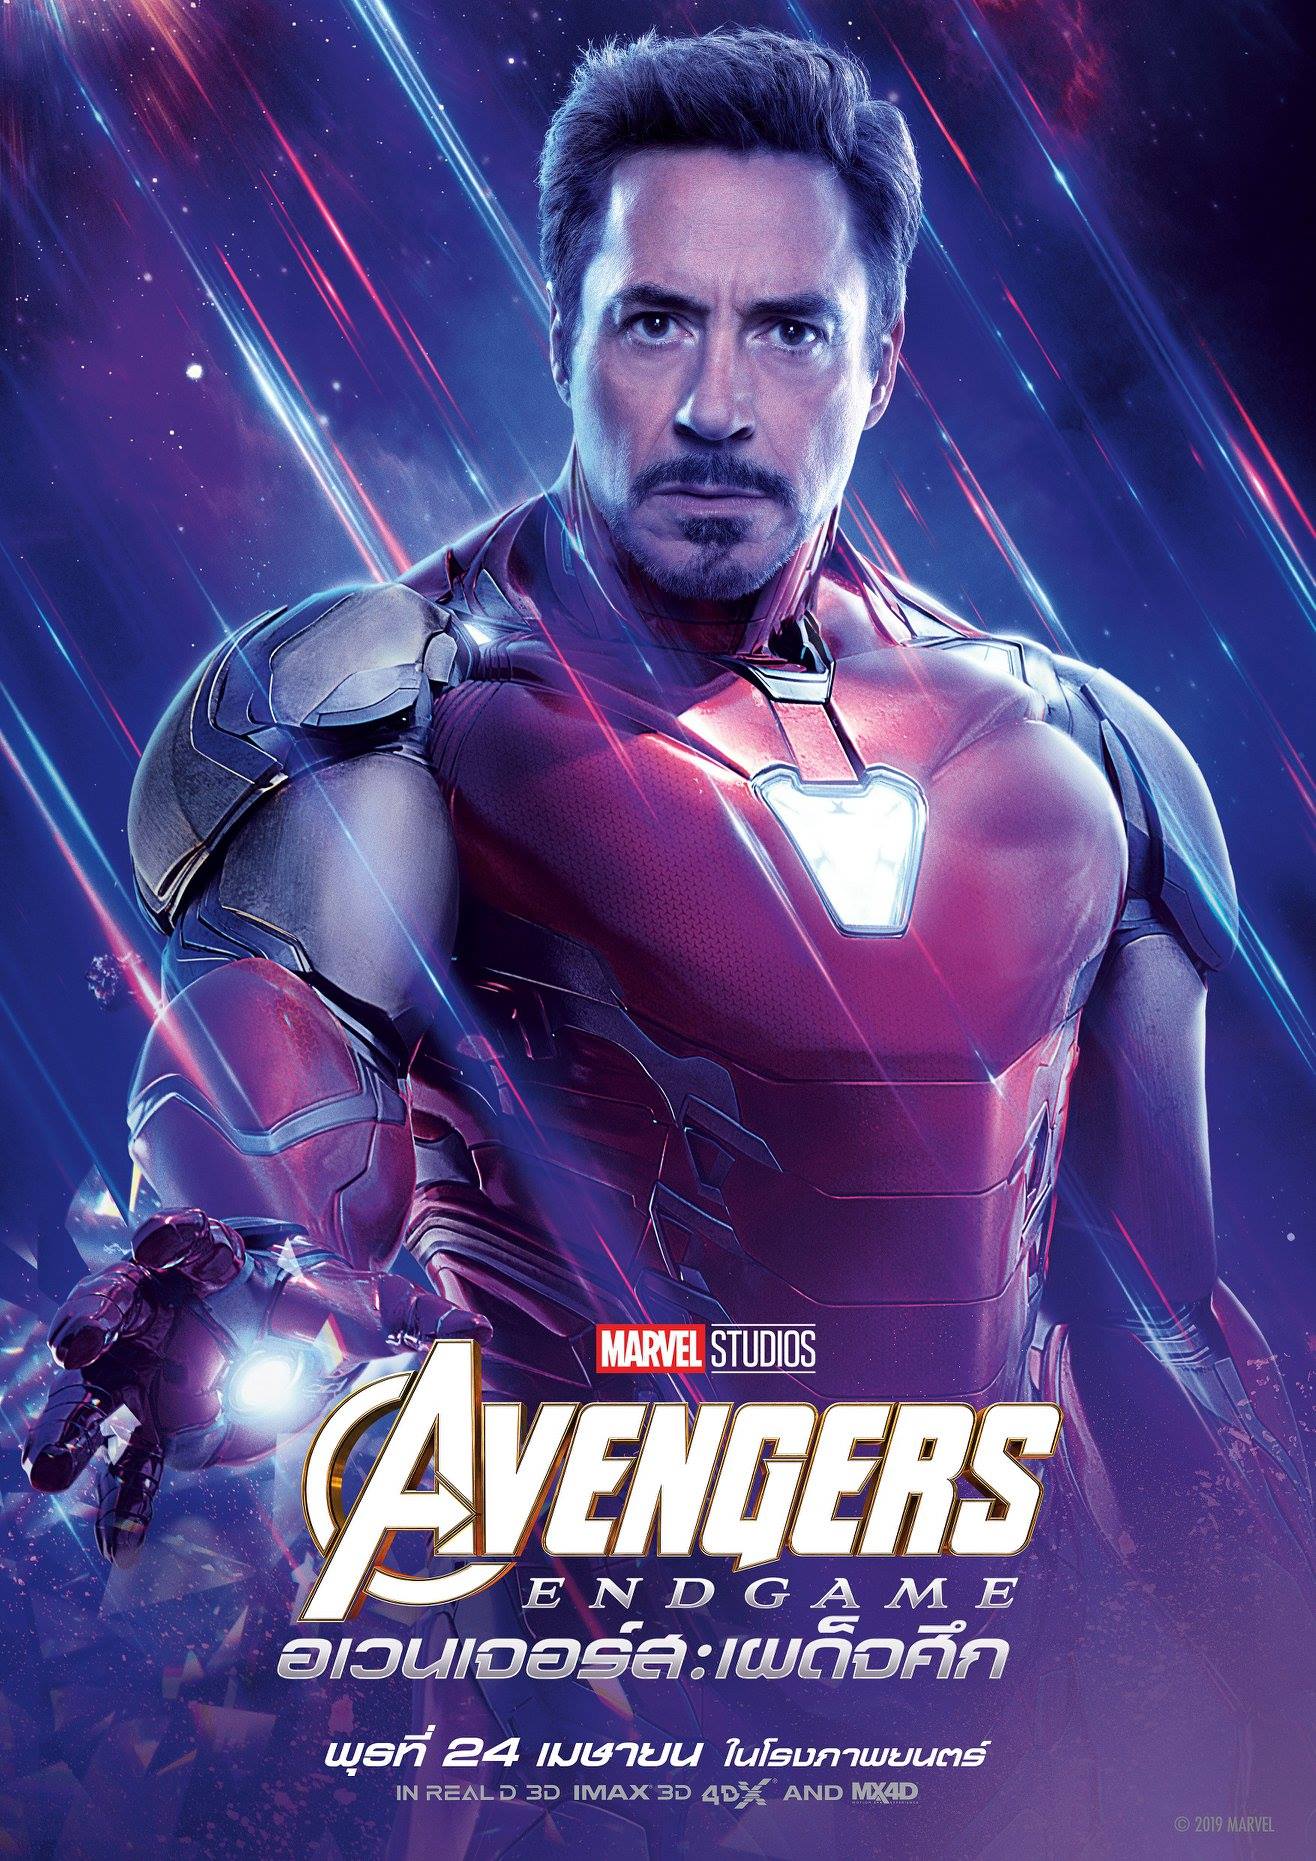 Kevin Feige de Marvel habla sobre Avengers: el tiempo de duración de la vejiga al final del juego